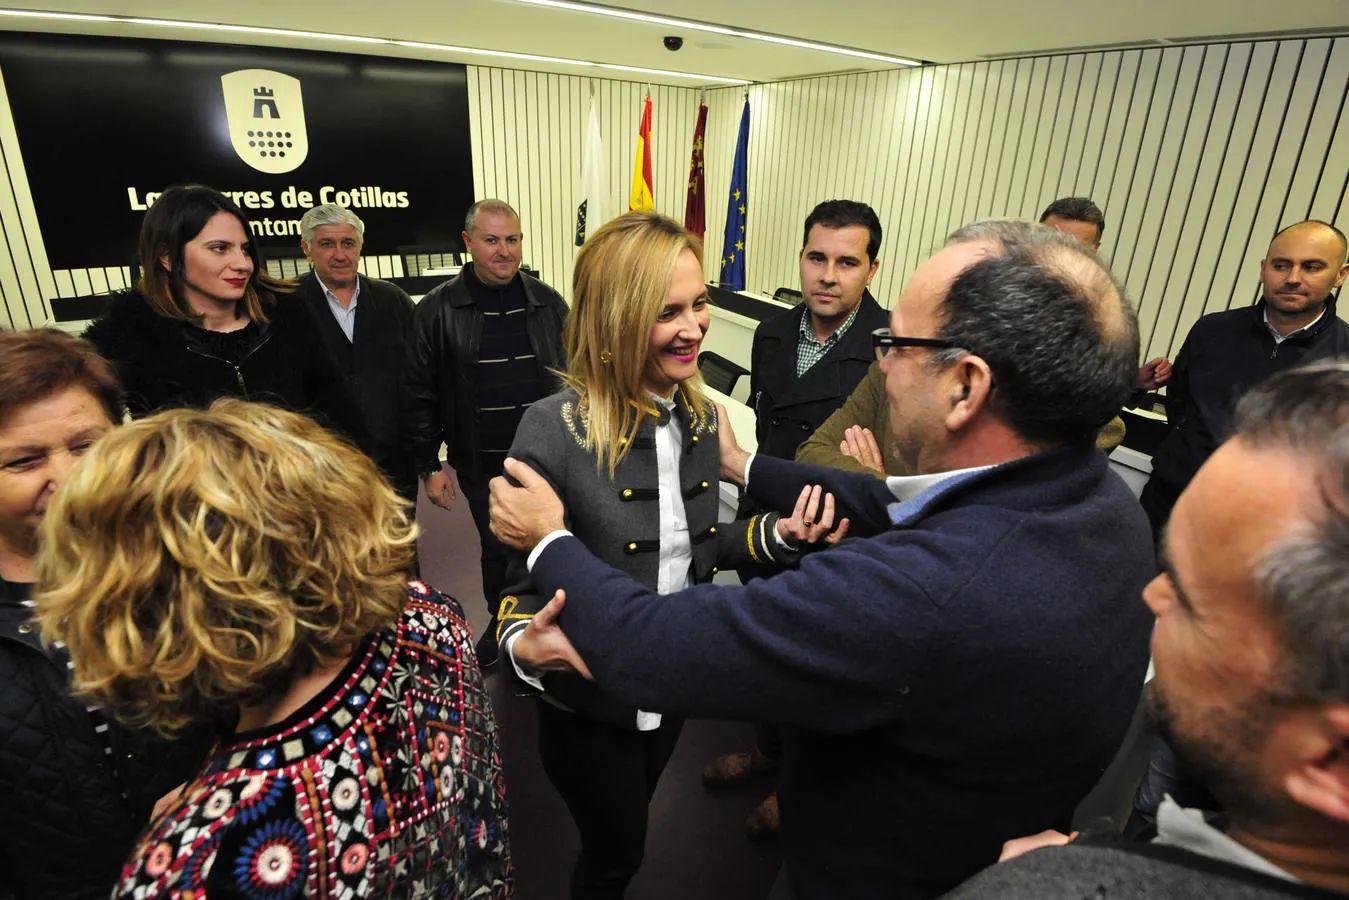 La edil no adscrita Maria Ángeles García decidió abstenerse en el Pleno, los que facilitó el relevo en la alcaldía para el PP sin ningún sobresalto